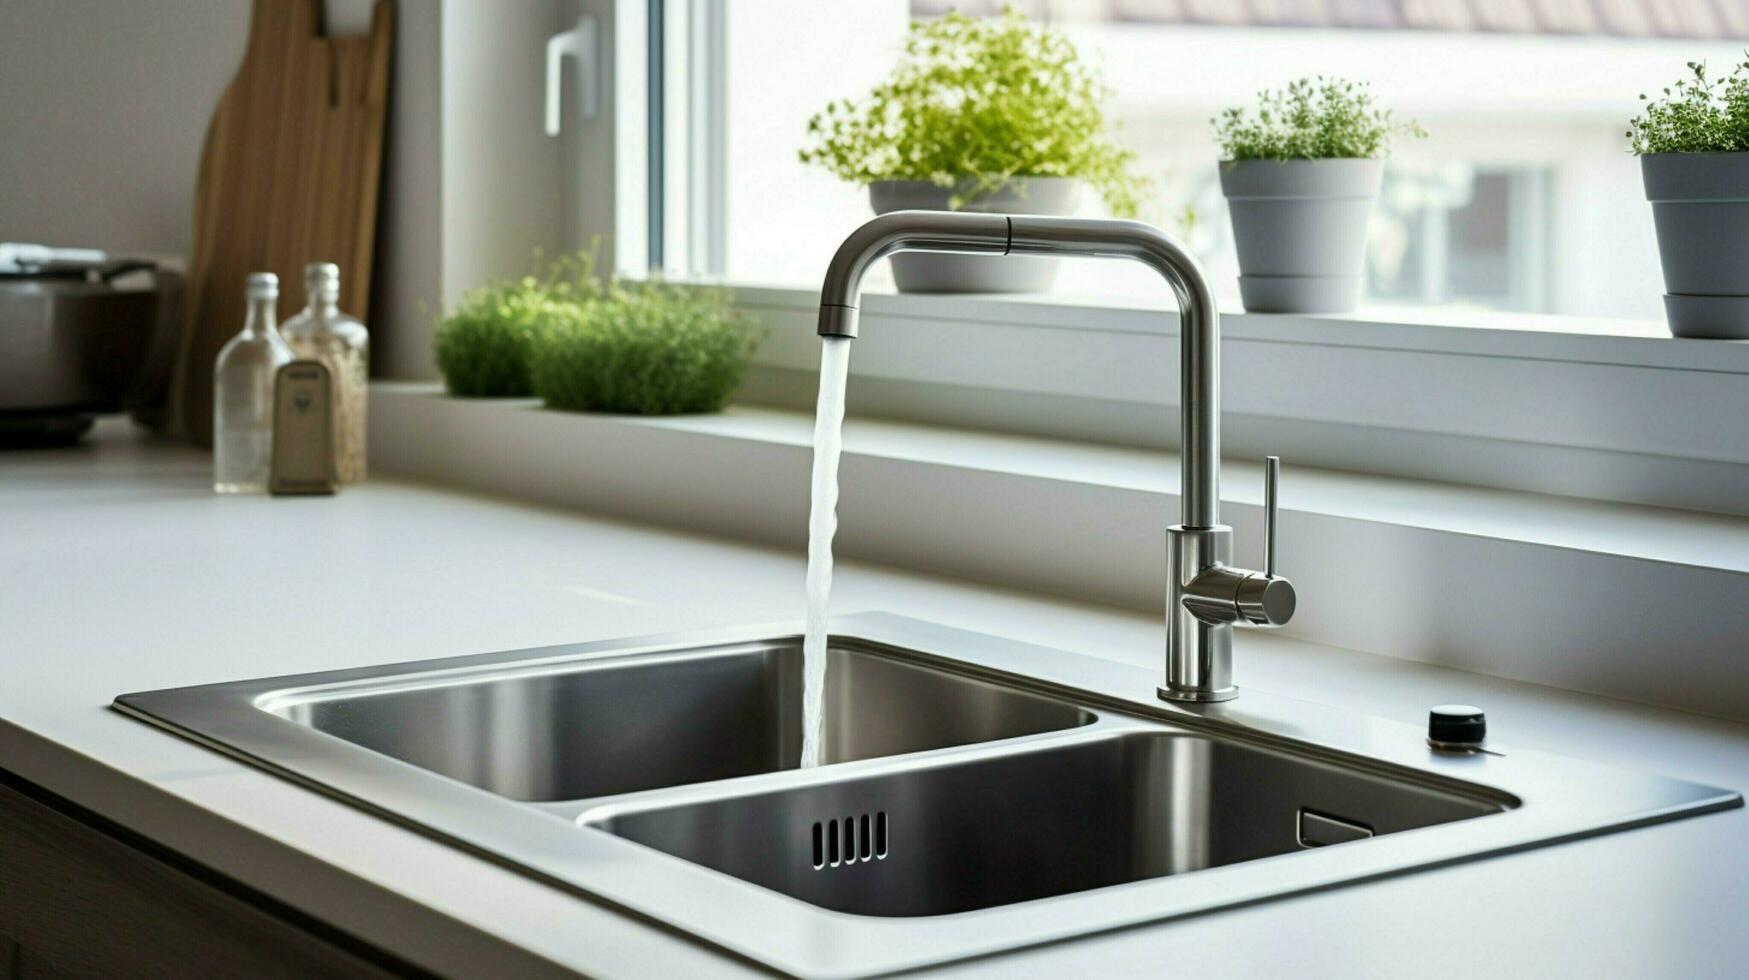 sauber modern Küche sinken mit Wasserhahn und Flüssigkeit Container foto